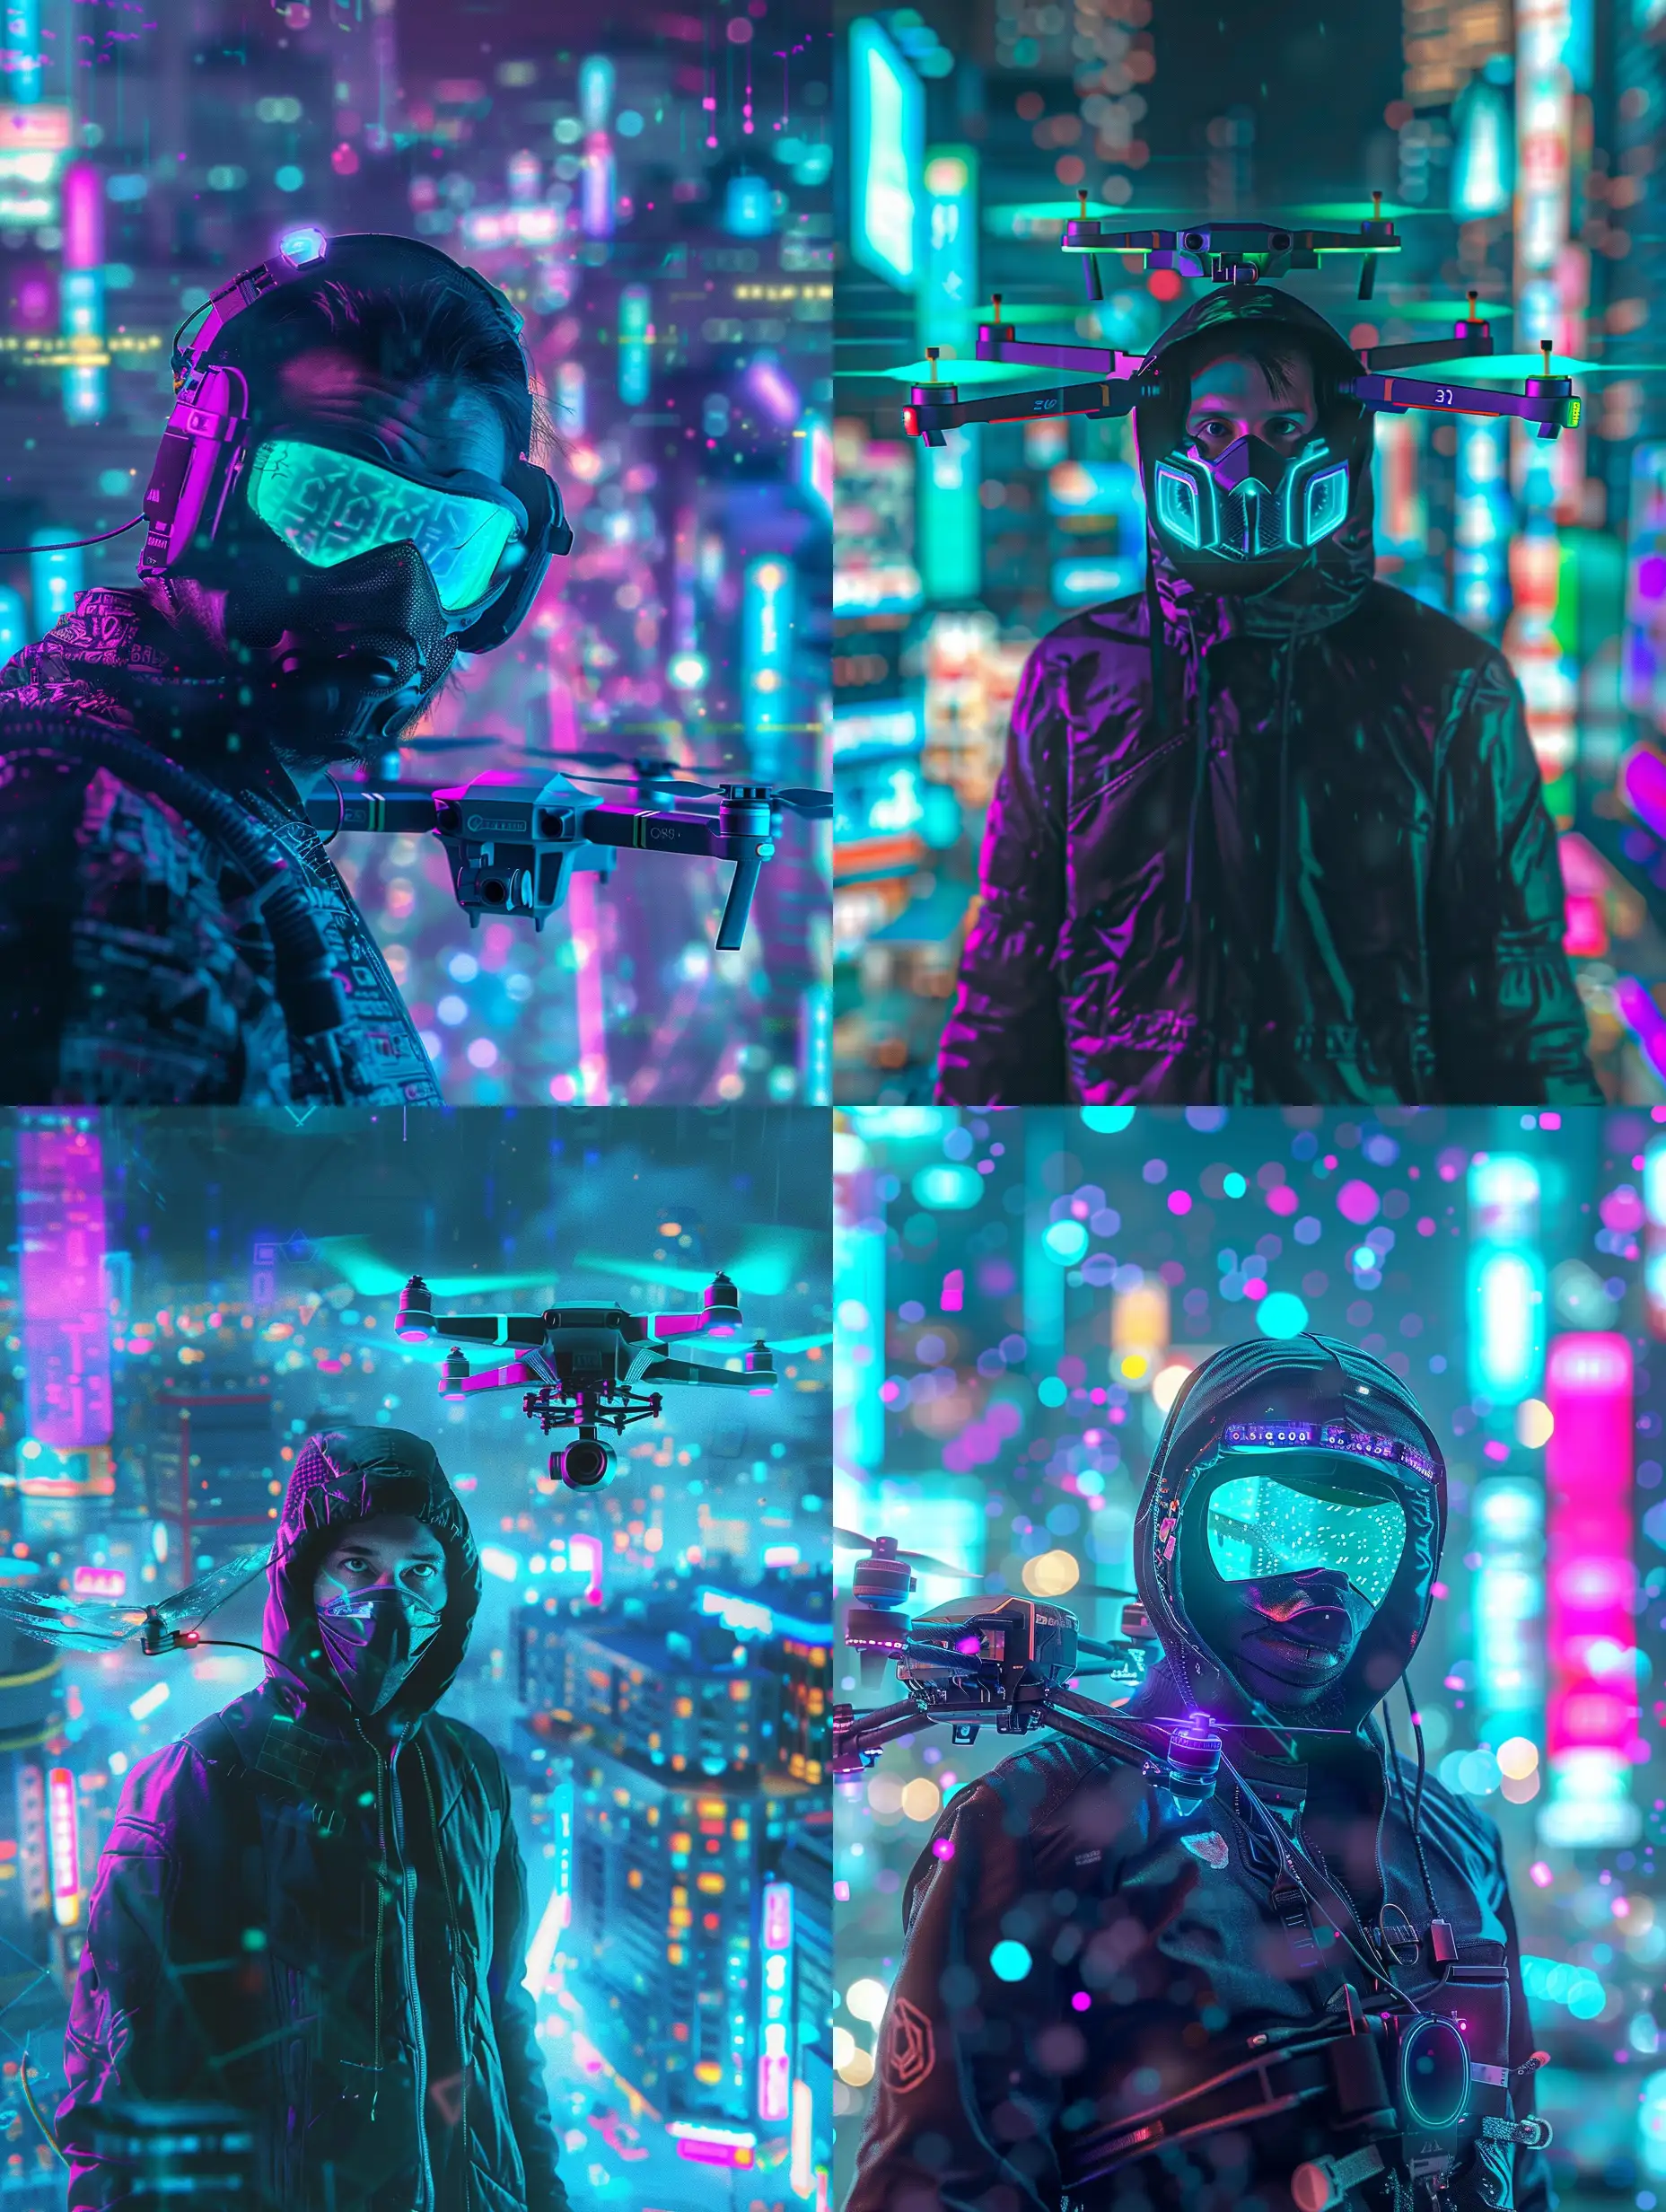 Cyberpunk-Hacker-in-Neotokyo-with-Drone-Futuristic-Urban-Scene